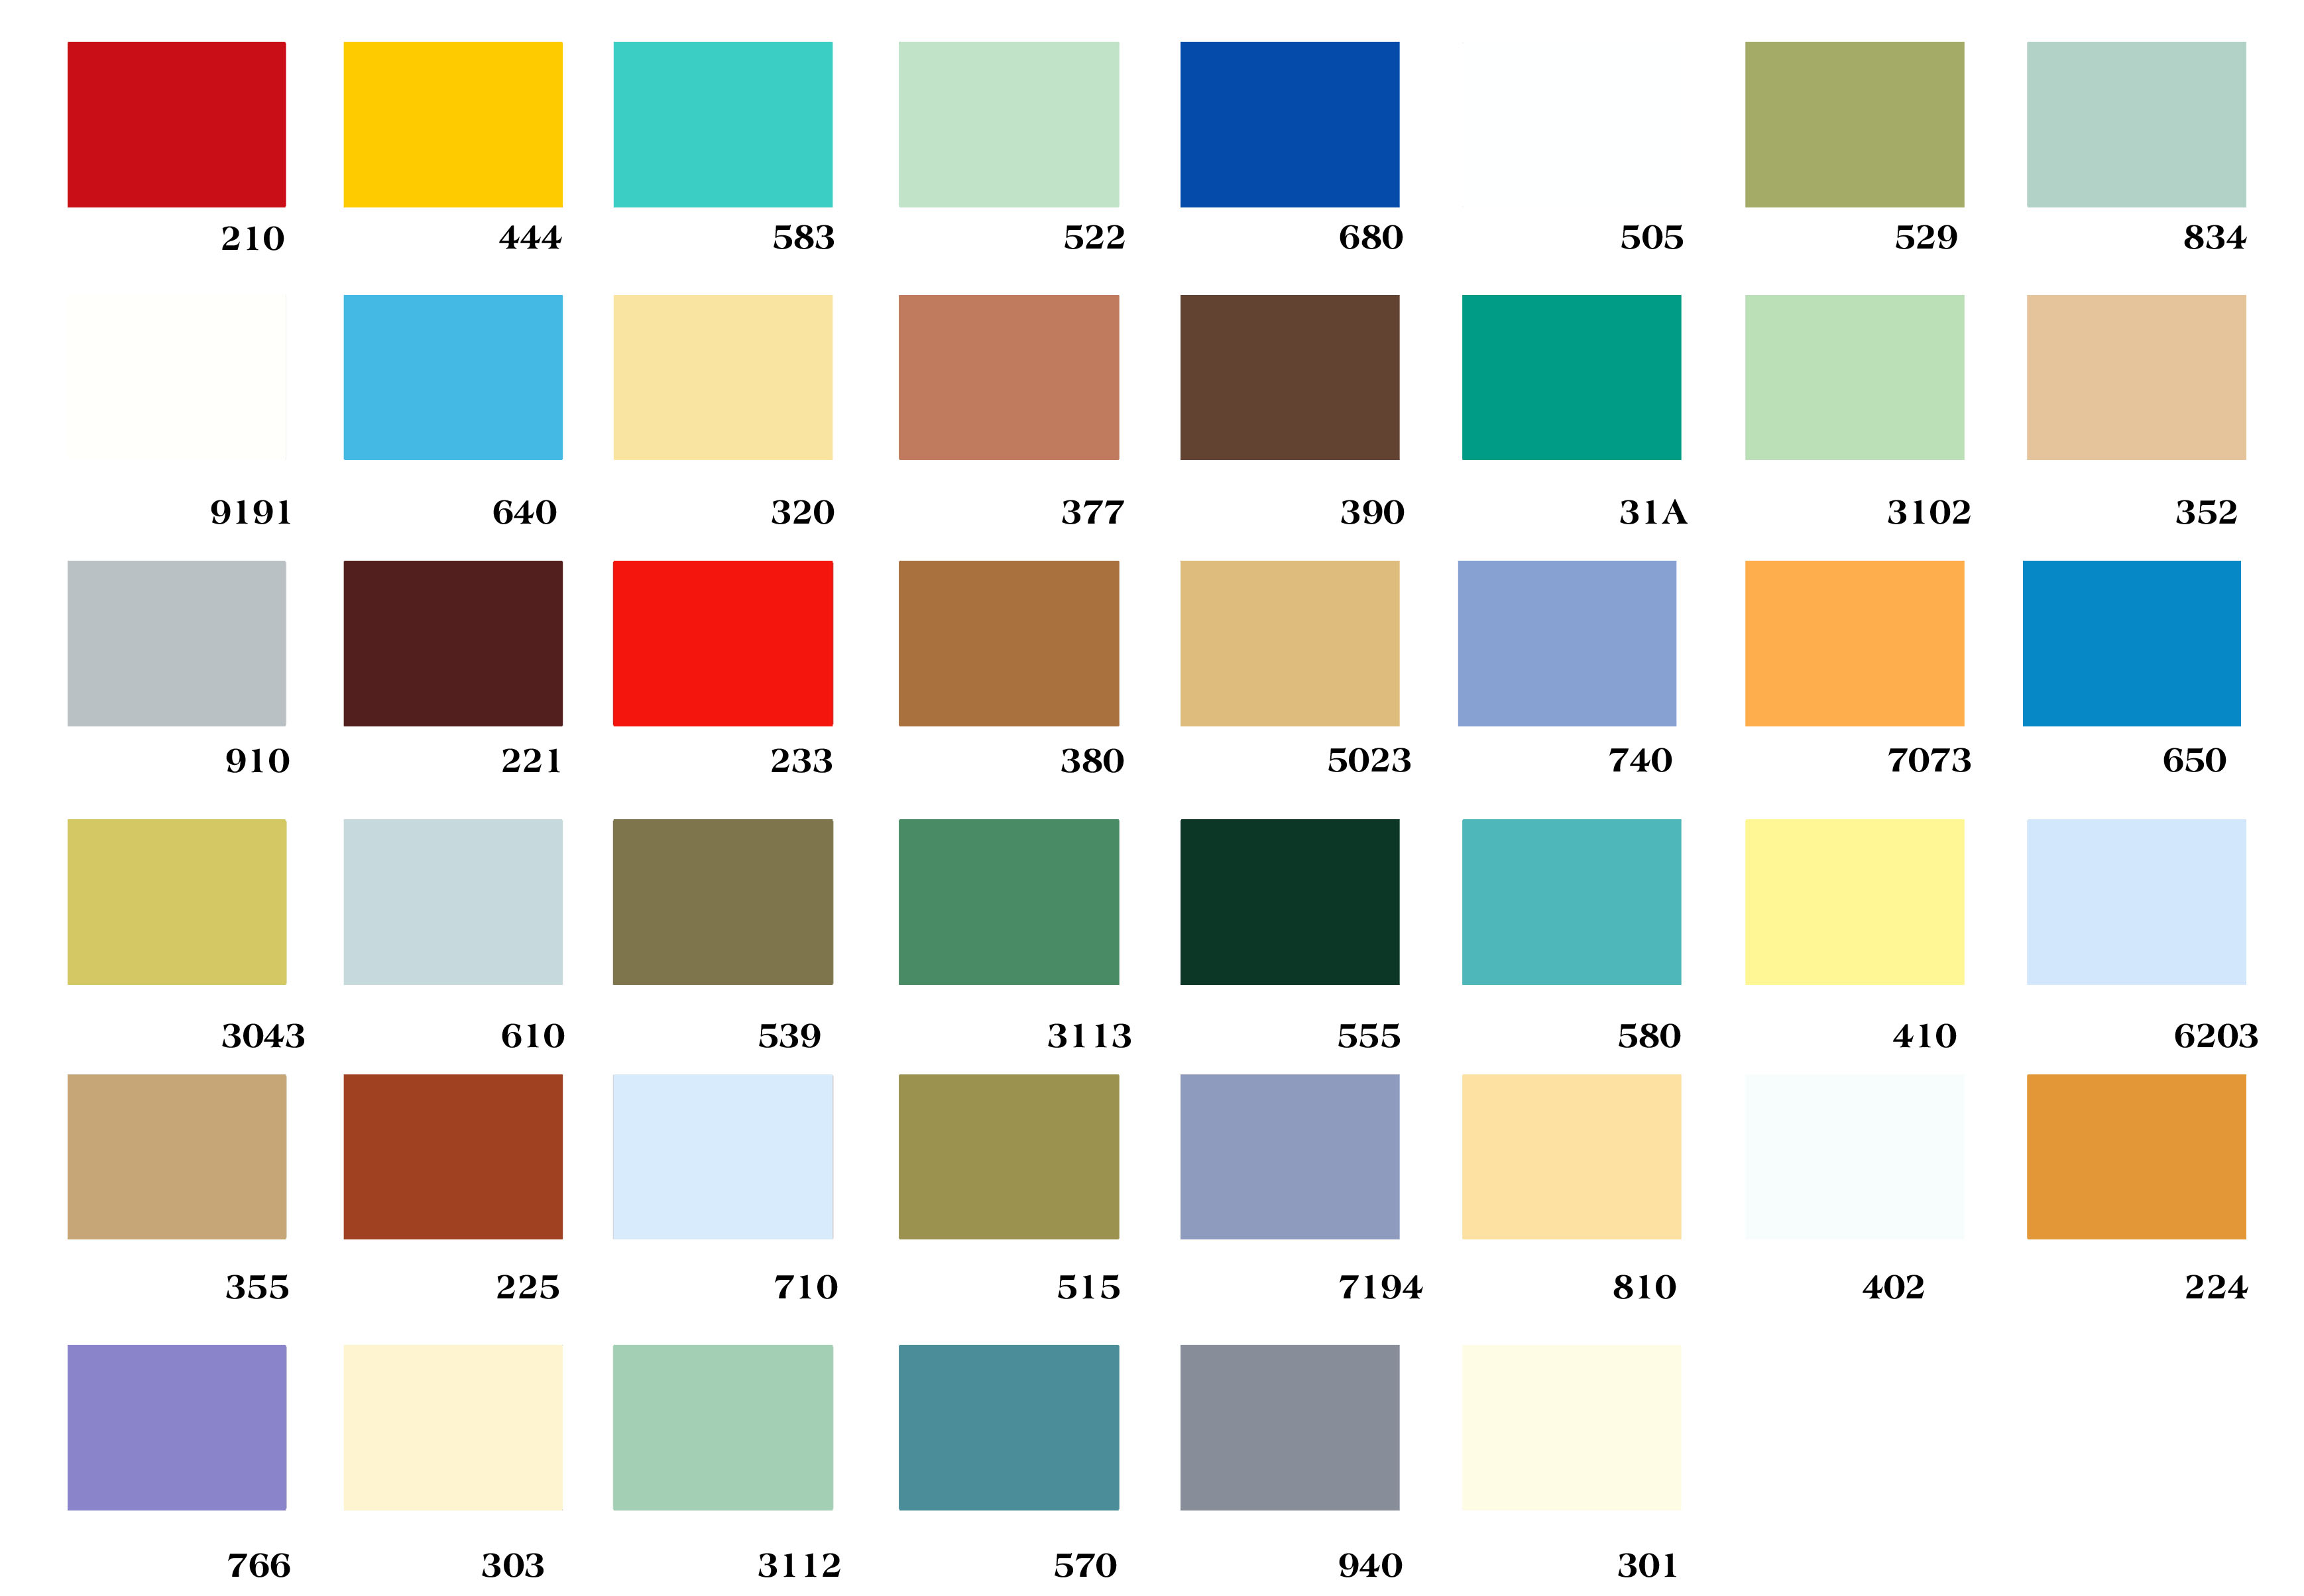 Tham khảo ngay top 50 màu sơn Expo 111 đẹp nhất và được ưa chuộng nhất hiện nay. Lựa chọn một trong những màu sơn này chắc chắn sẽ làm cho căn nhà của bạn trông sang trọng và đẳng cấp hơn.